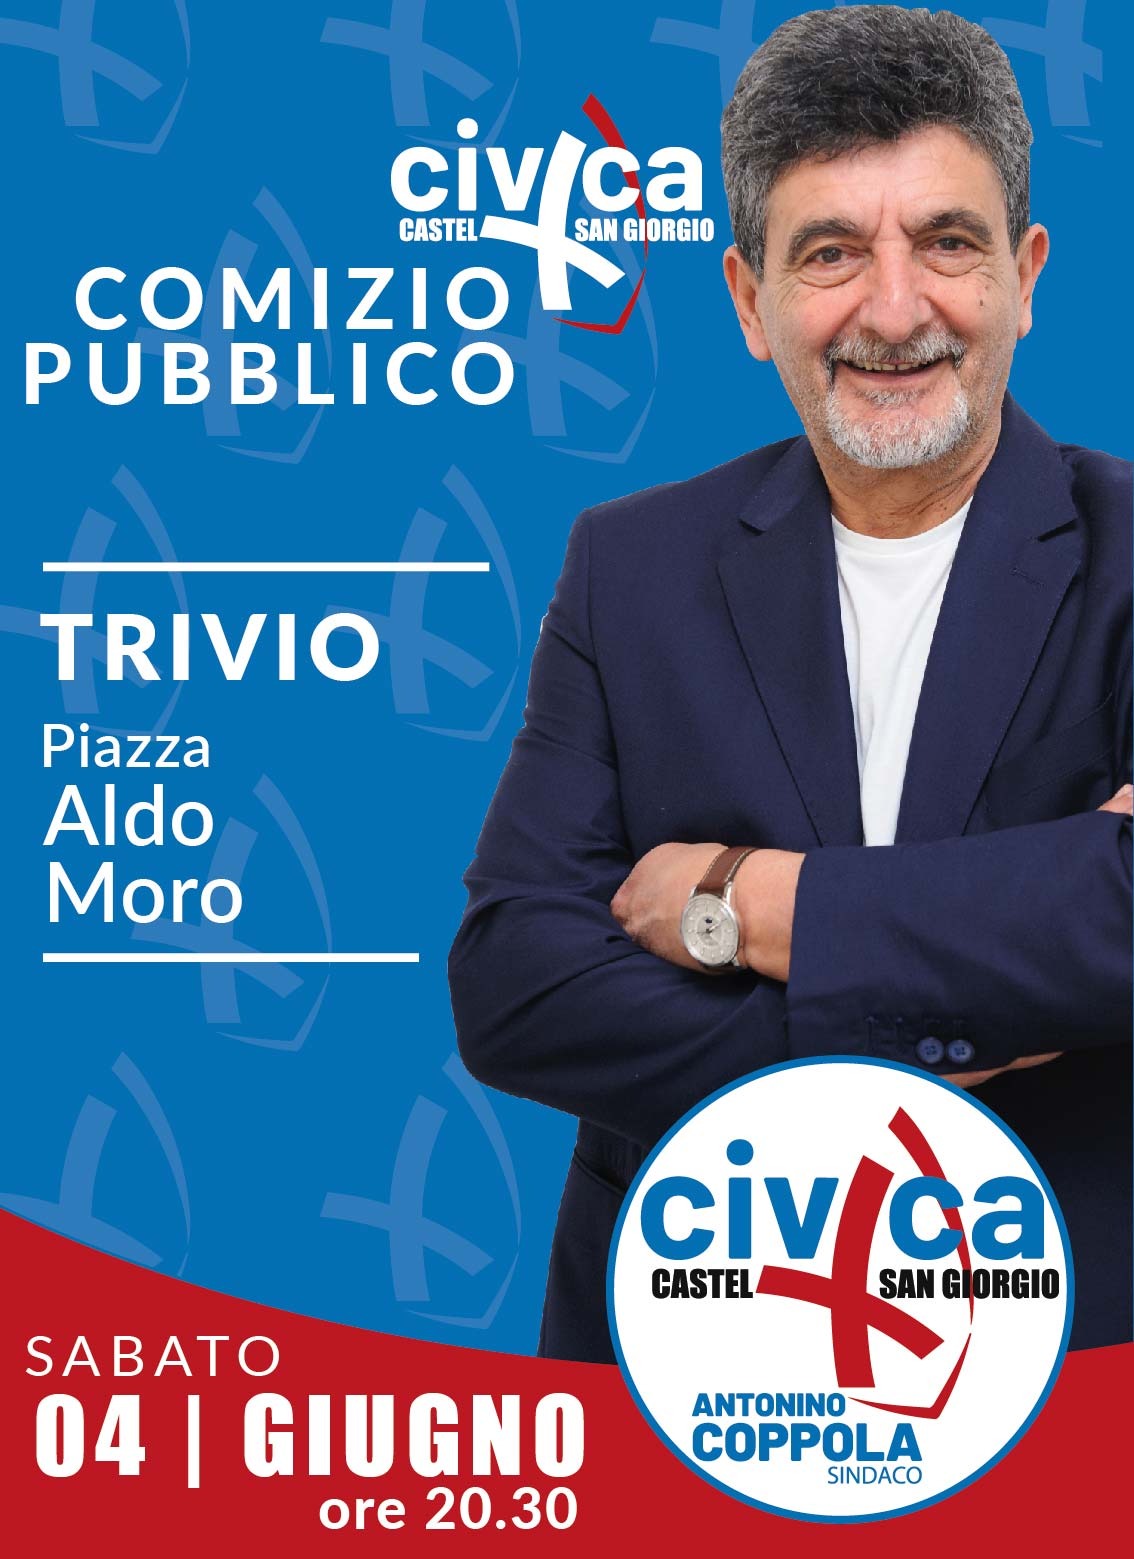 Castel San Giorgio: Amministrative, “Civica Castel San Giorgio” con candidato Sindaco Antonio Coppola stasera a Trivio